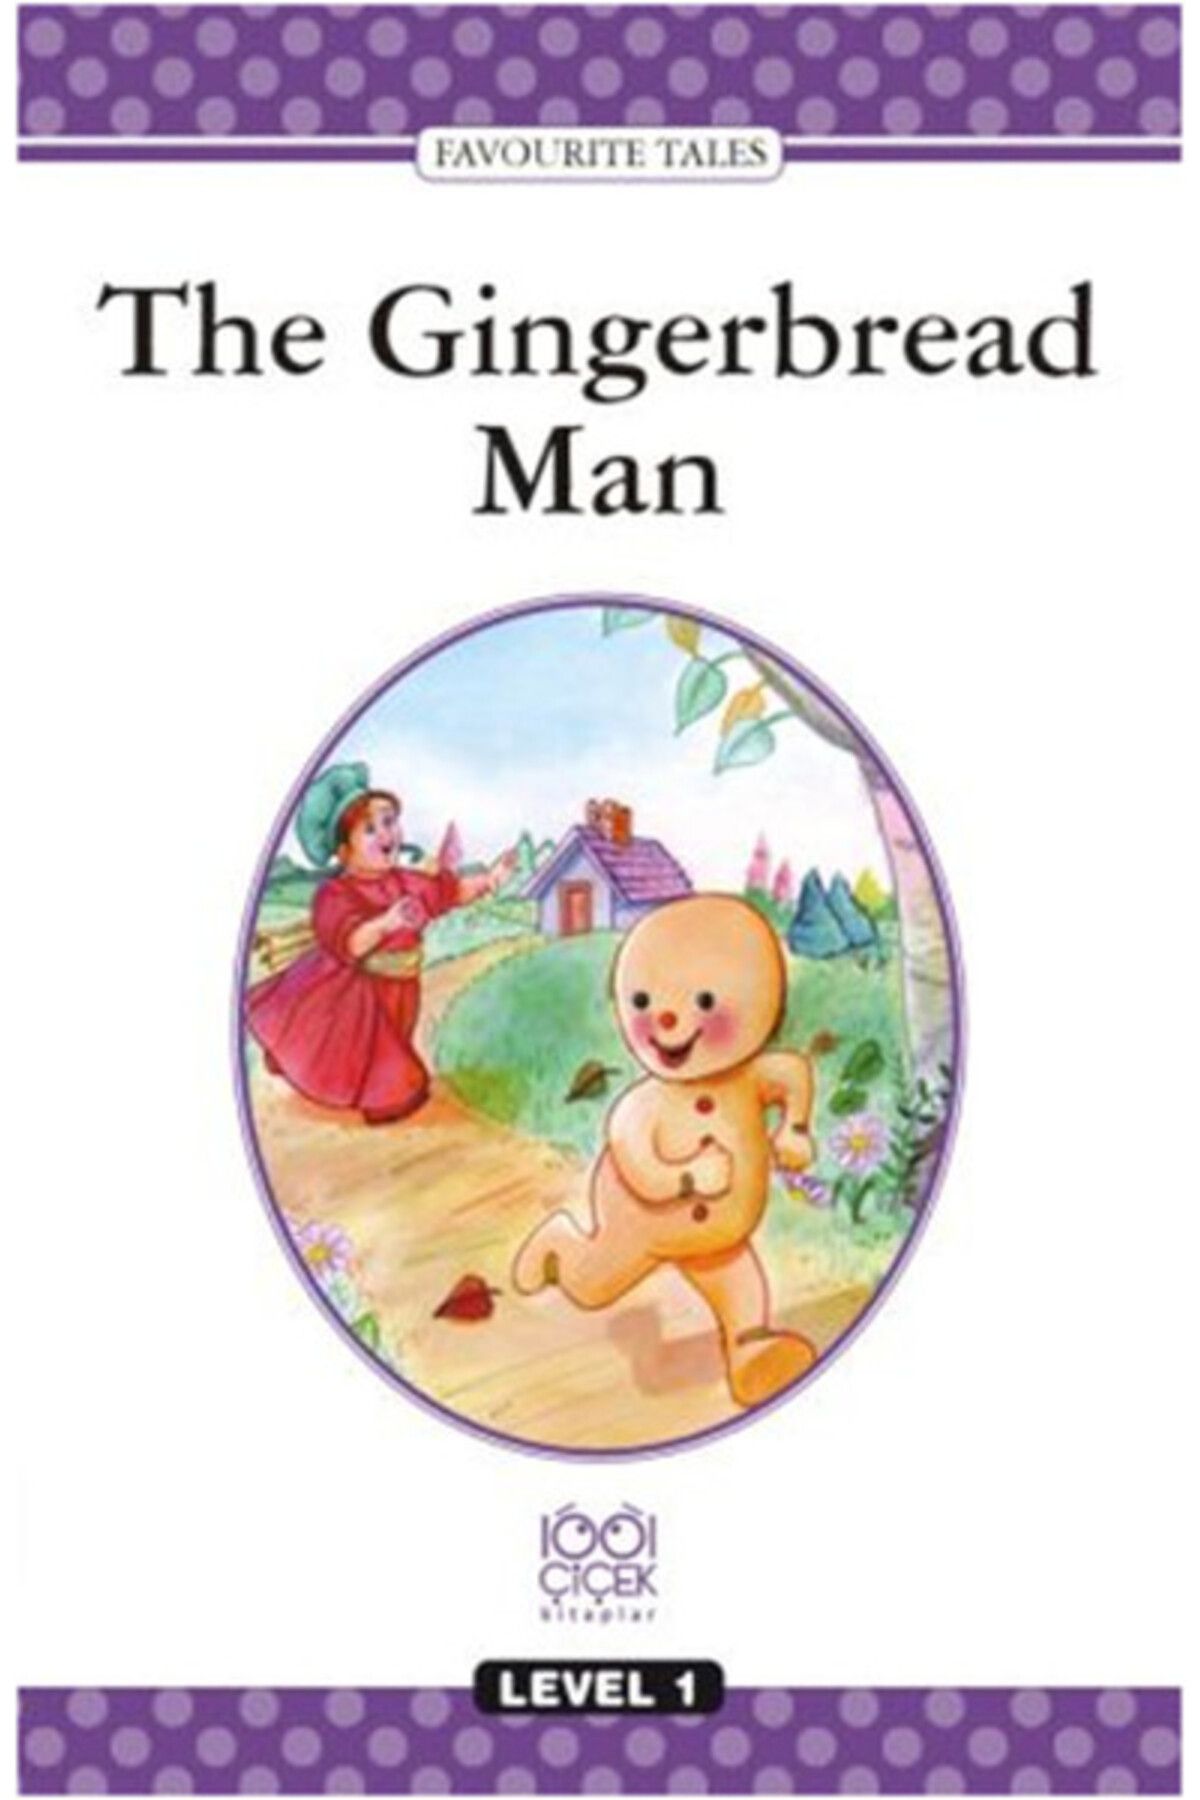 1001 Çiçek Kitaplar Level Books - Level 1- The Gingerbread Man